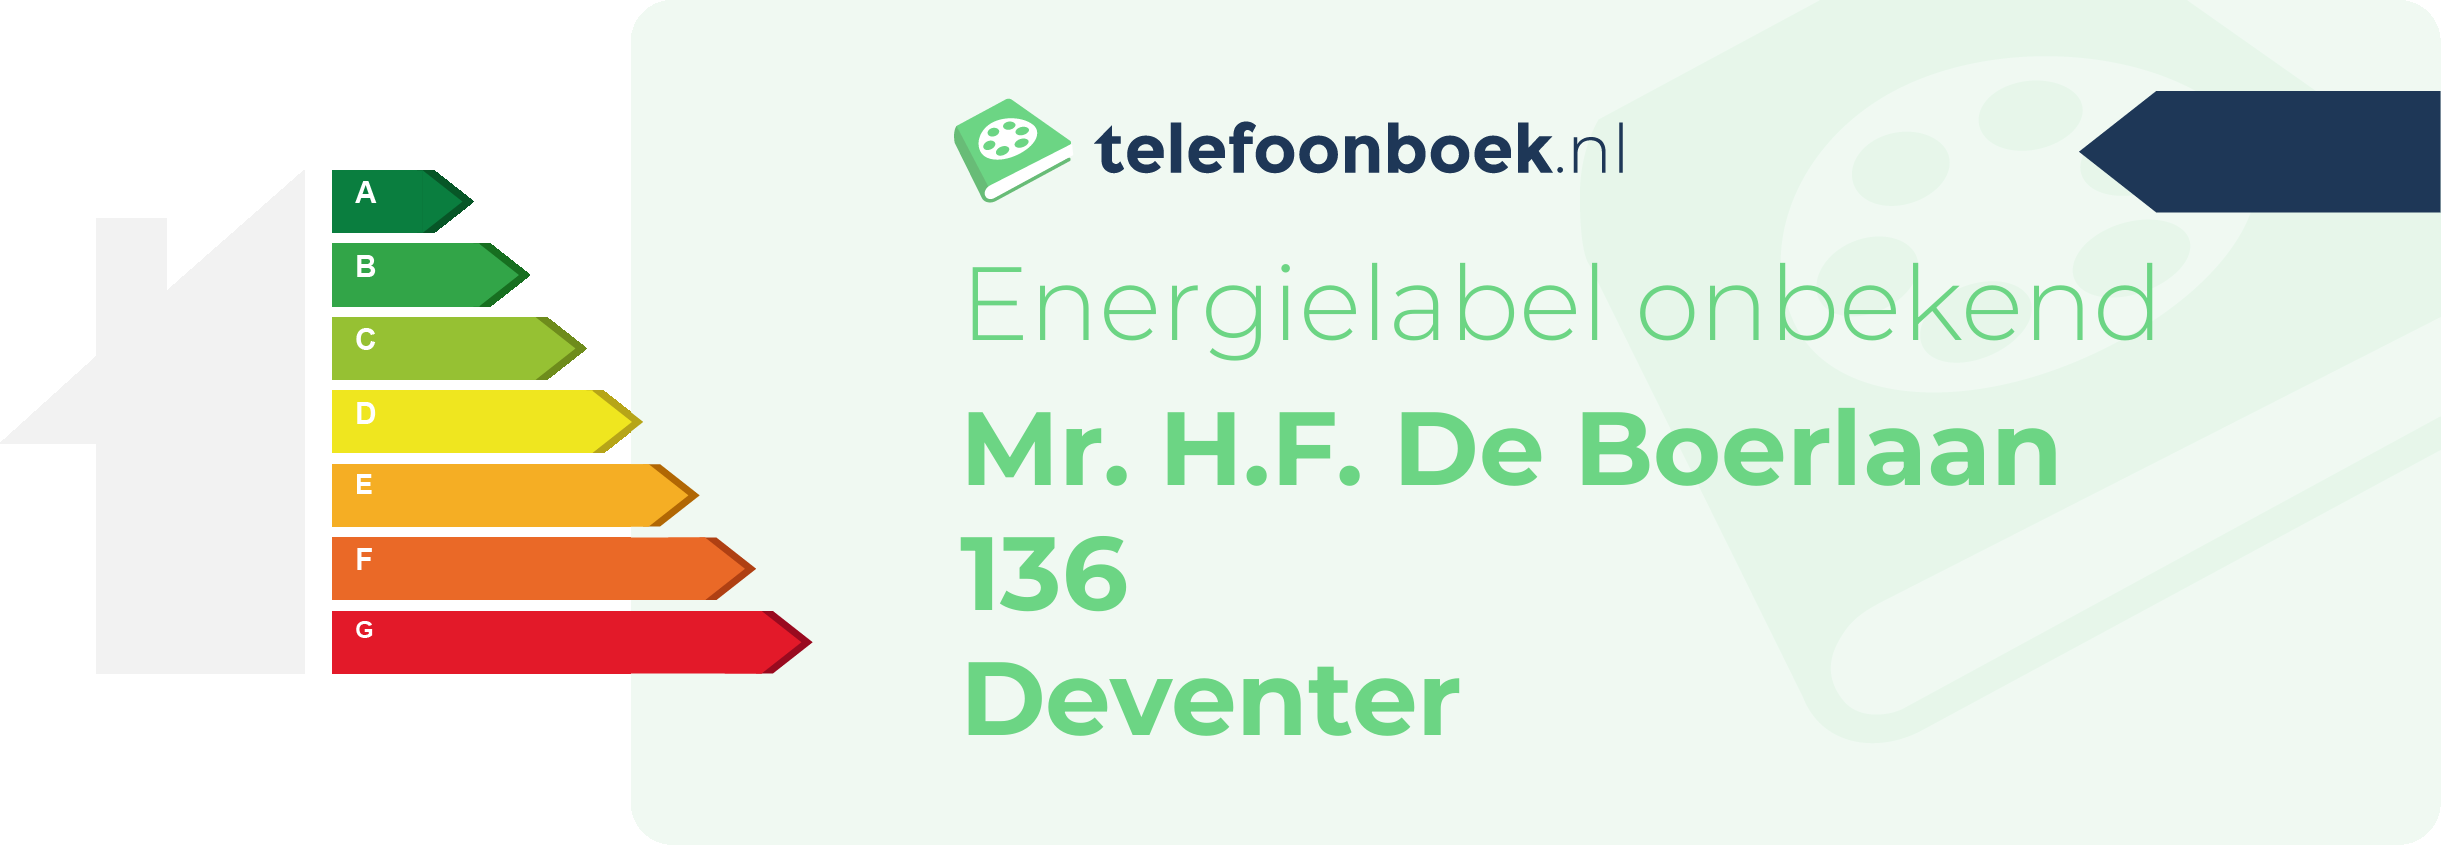 Energielabel Mr. H.F. De Boerlaan 136 Deventer